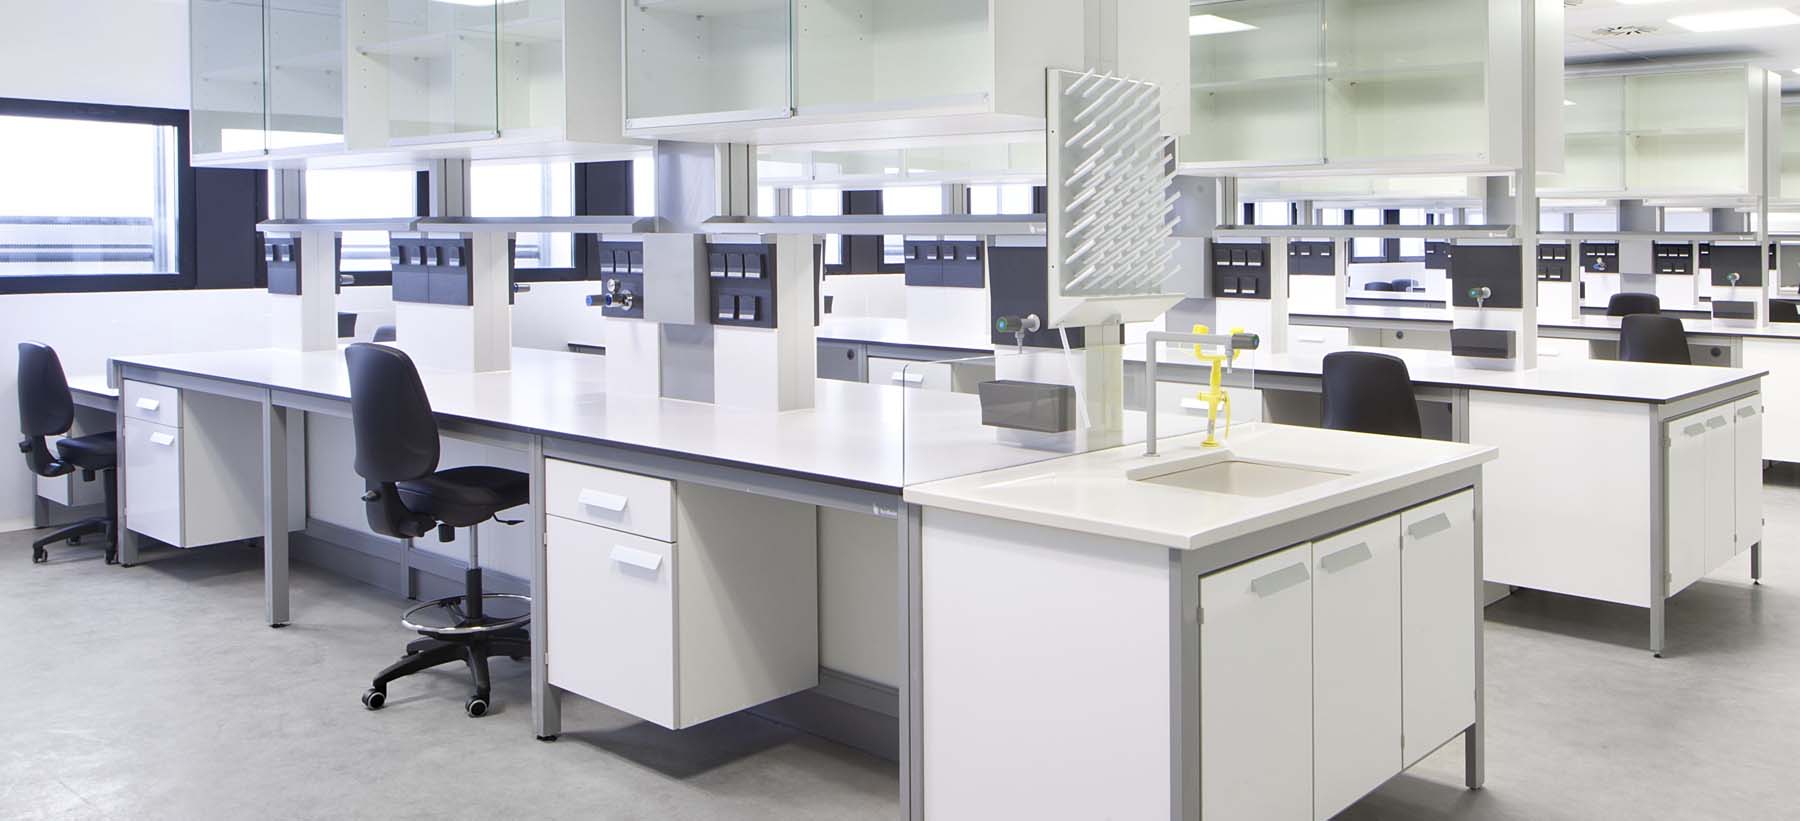 Podrido Acera Instrumento Mobiliario de Laboratorio | Glass Chemicals | Material y Equipos Especiales  de Laboratorio